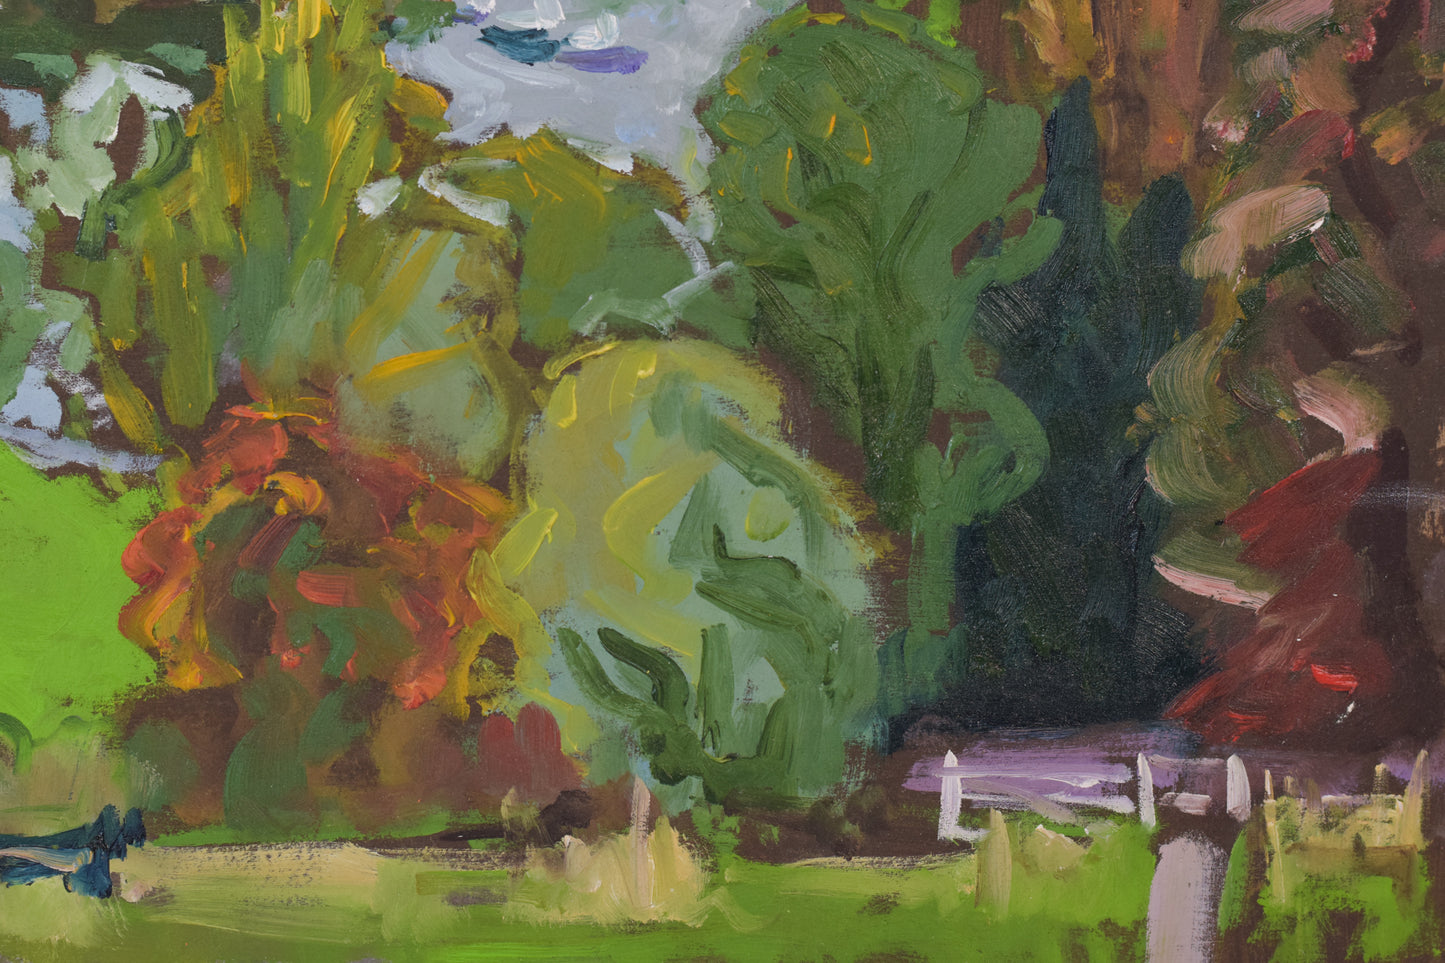 Richmond Terrace in Autumn - En Plein Air Painting